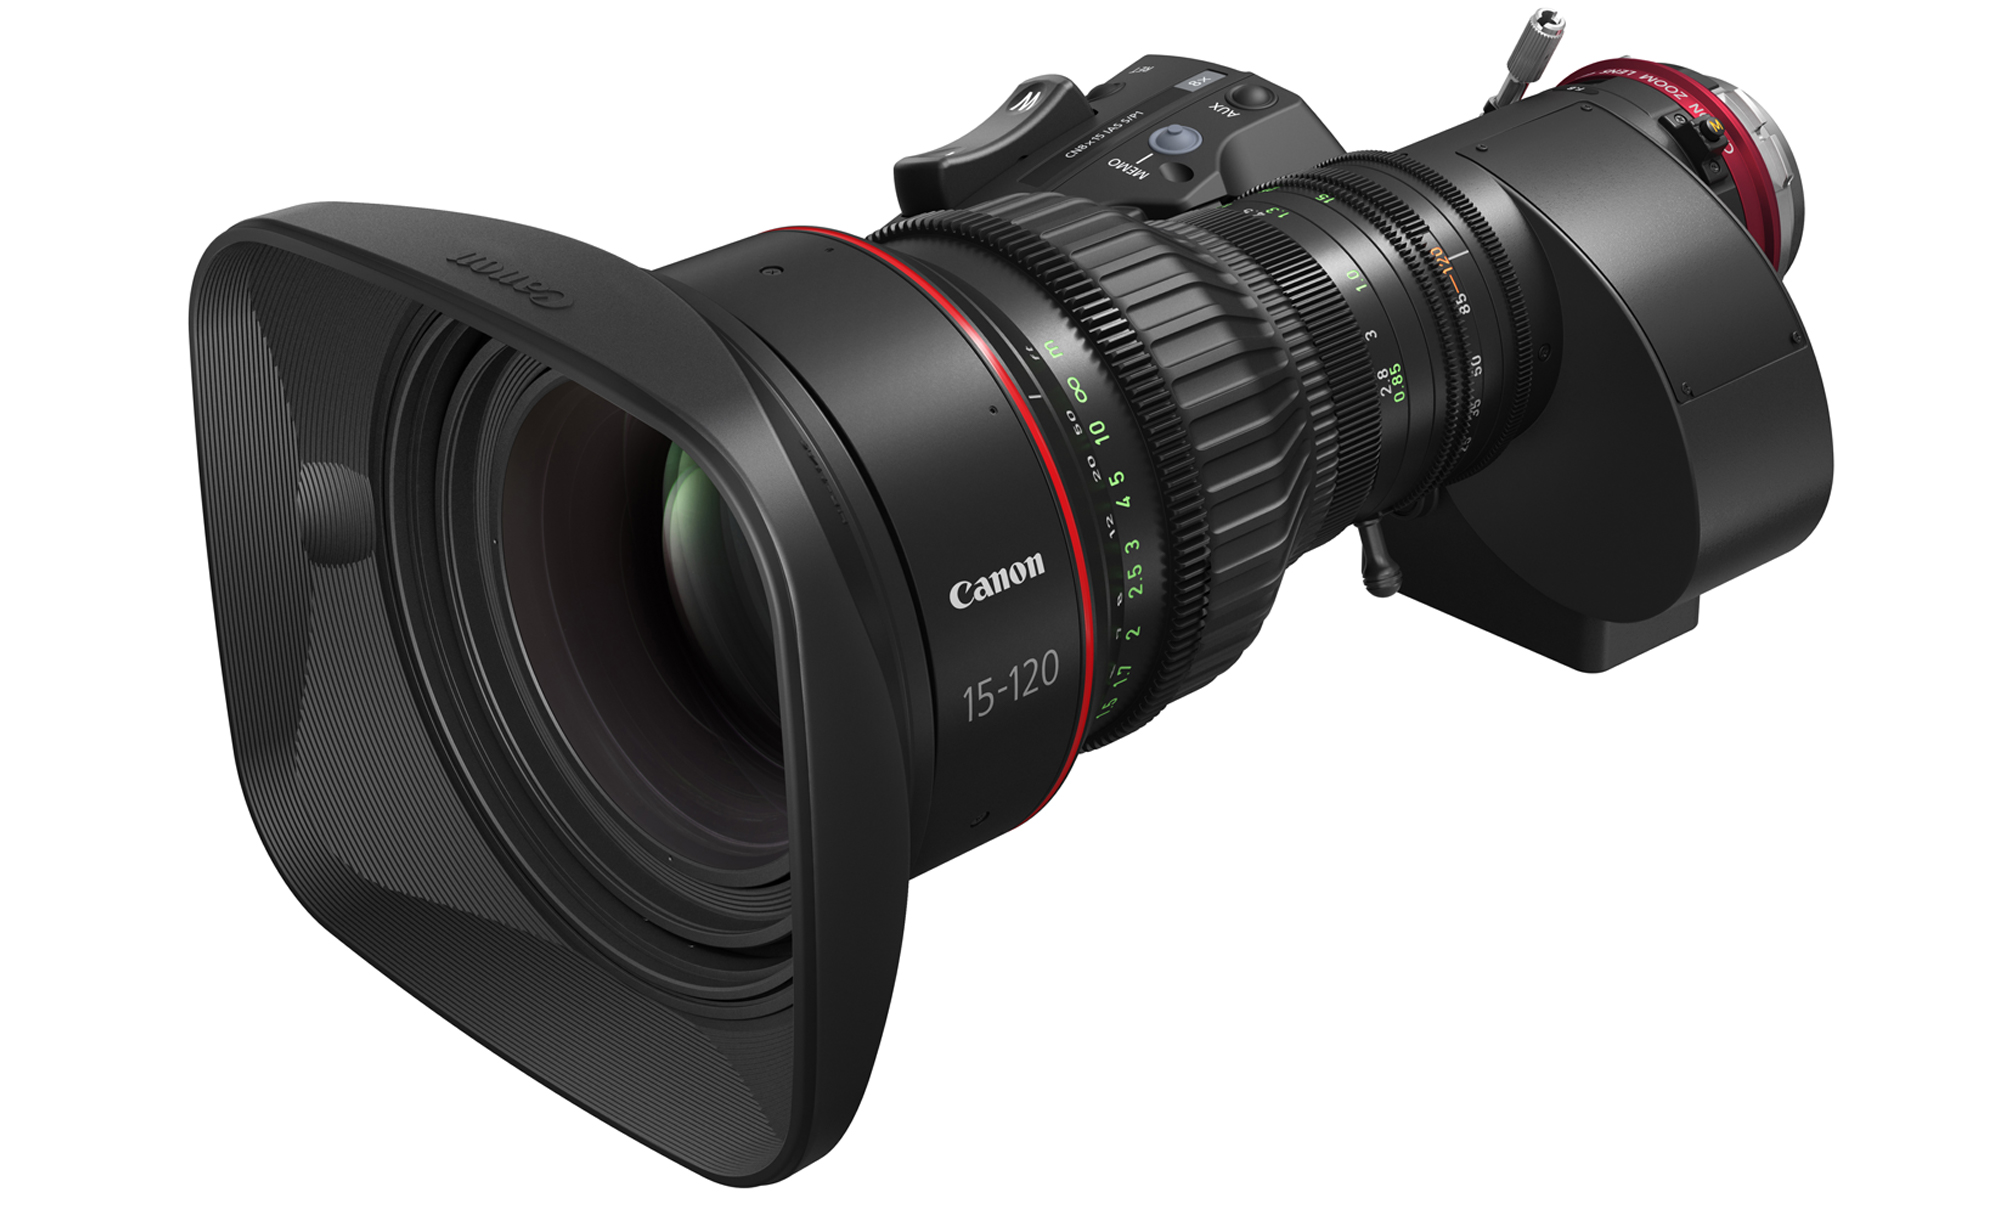 キヤノン、EFシネマレンズ「CINE-SERVO レンズ」シリーズ2製品を発表 ...